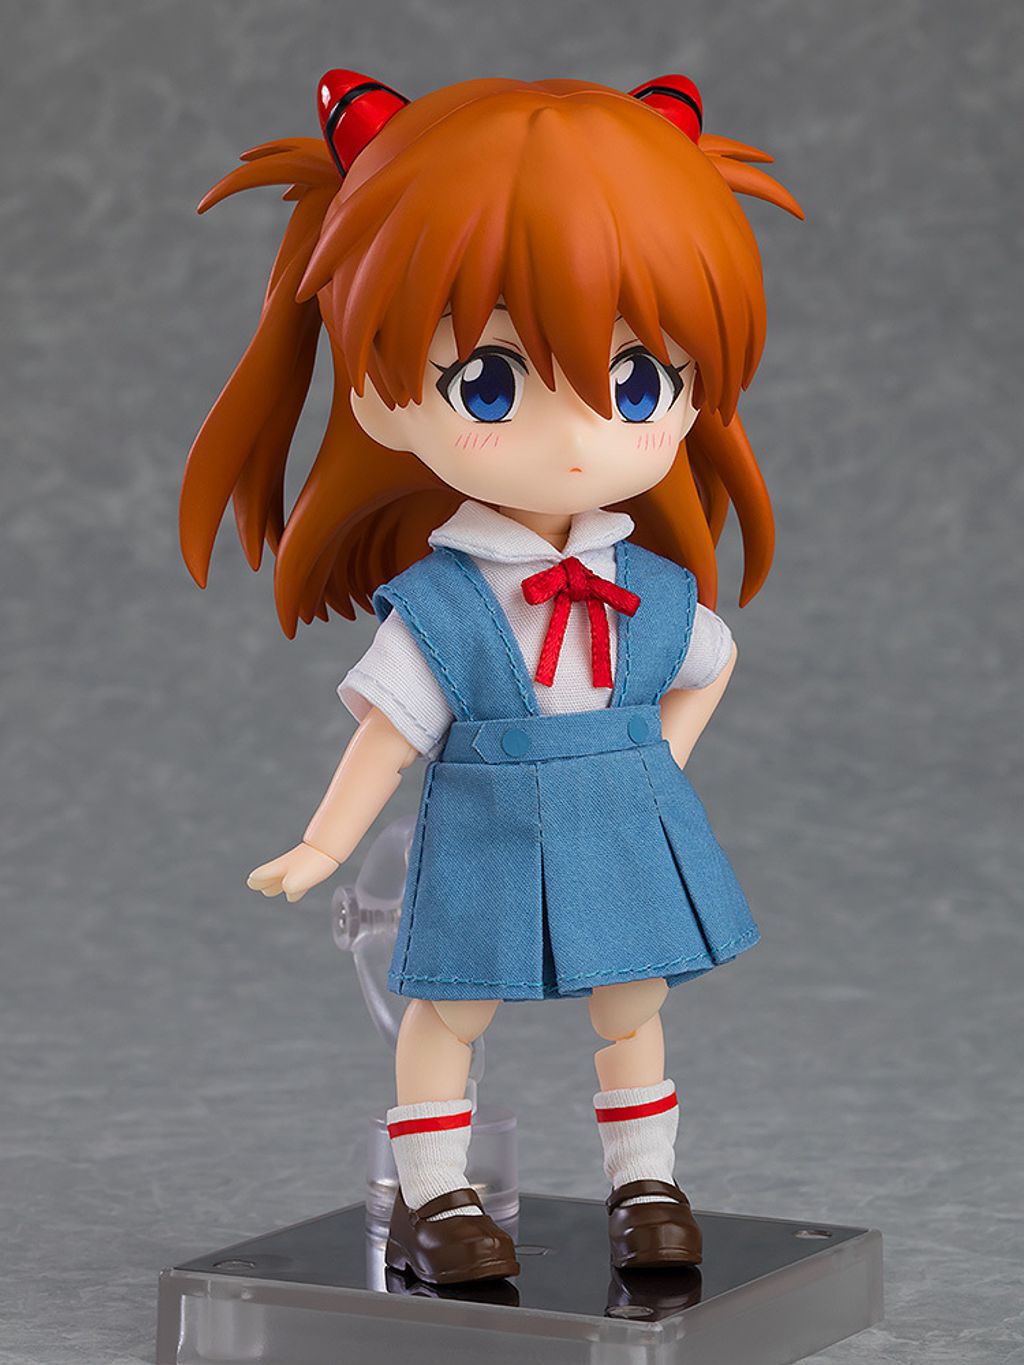 Nendoroid Doll Asuka Shikinami Langley